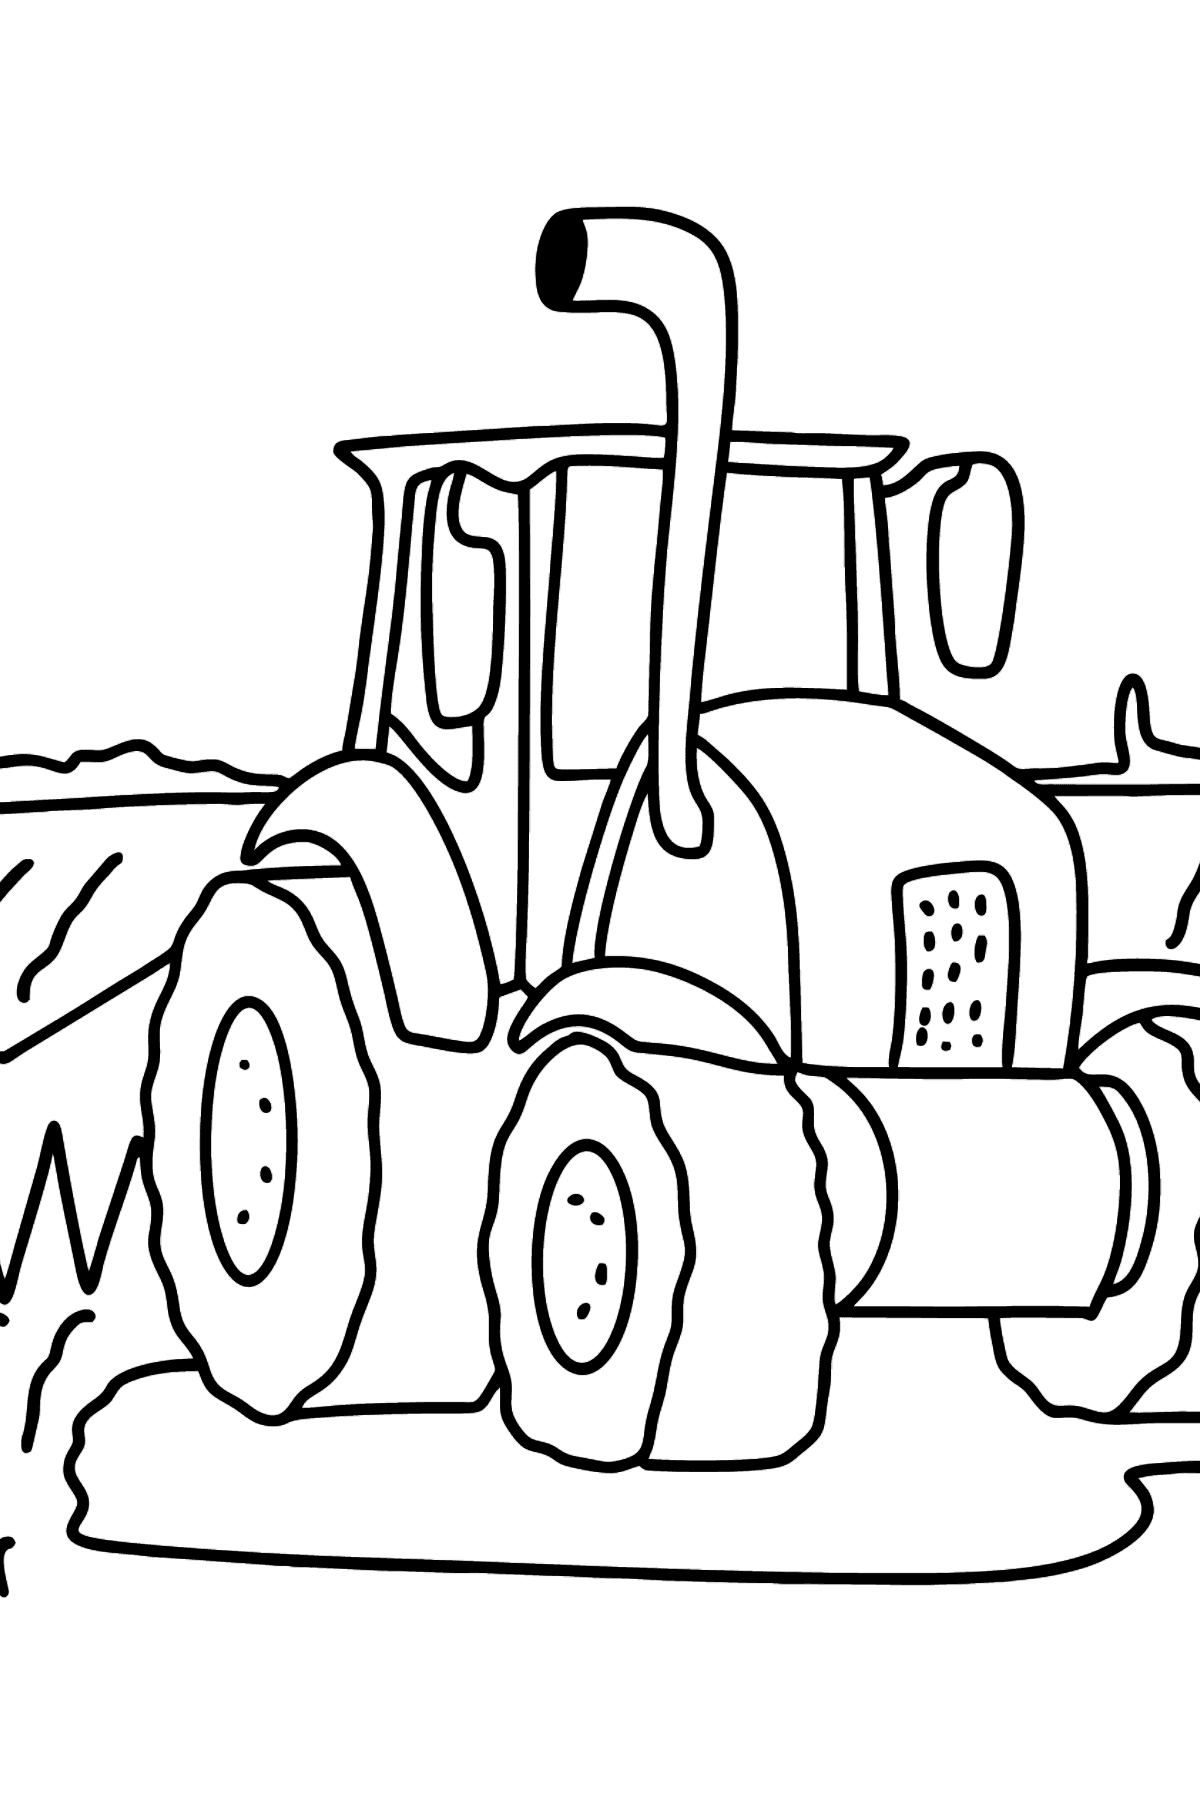 Dibujo de tractor en el campo para colorear - Dibujos para Colorear para Niños